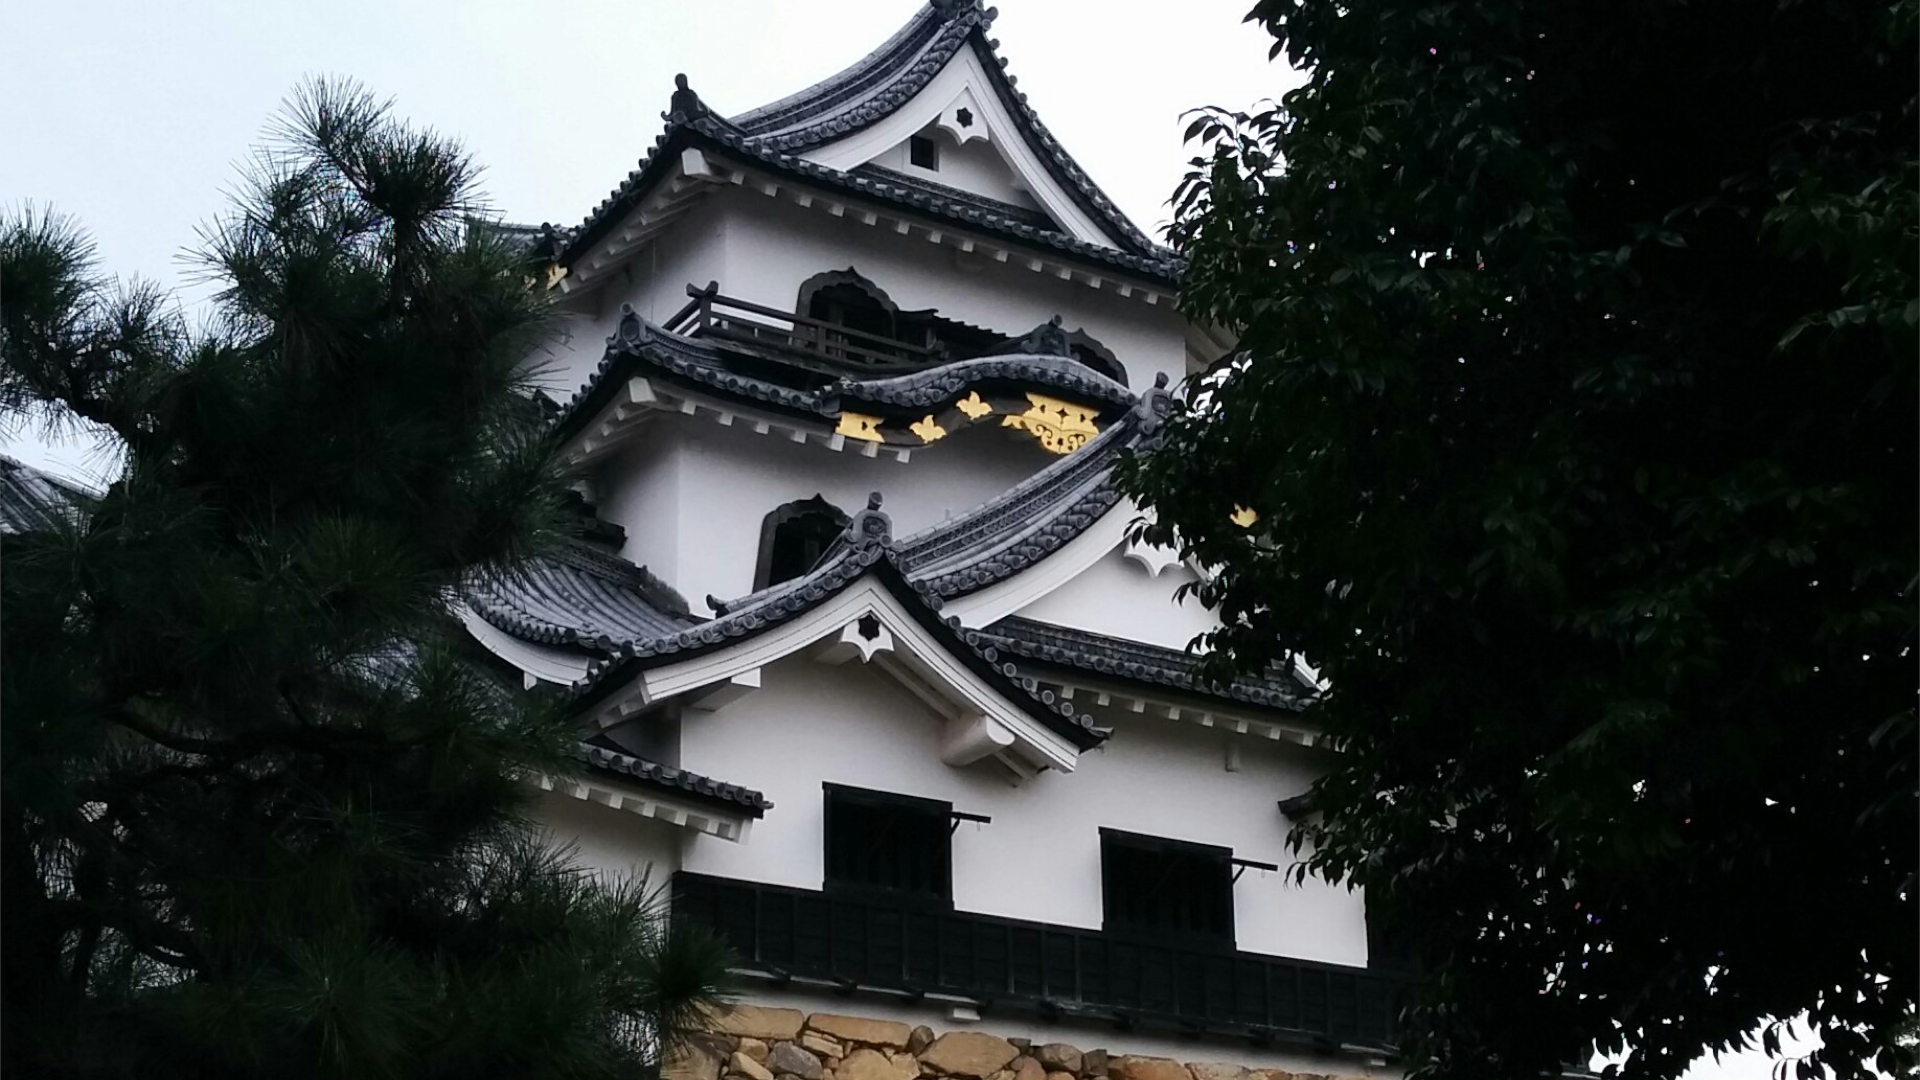 日本100名城めぐり 彦根城 に行く前に確認しておく事 お城とレトロの美学 収集のススメ